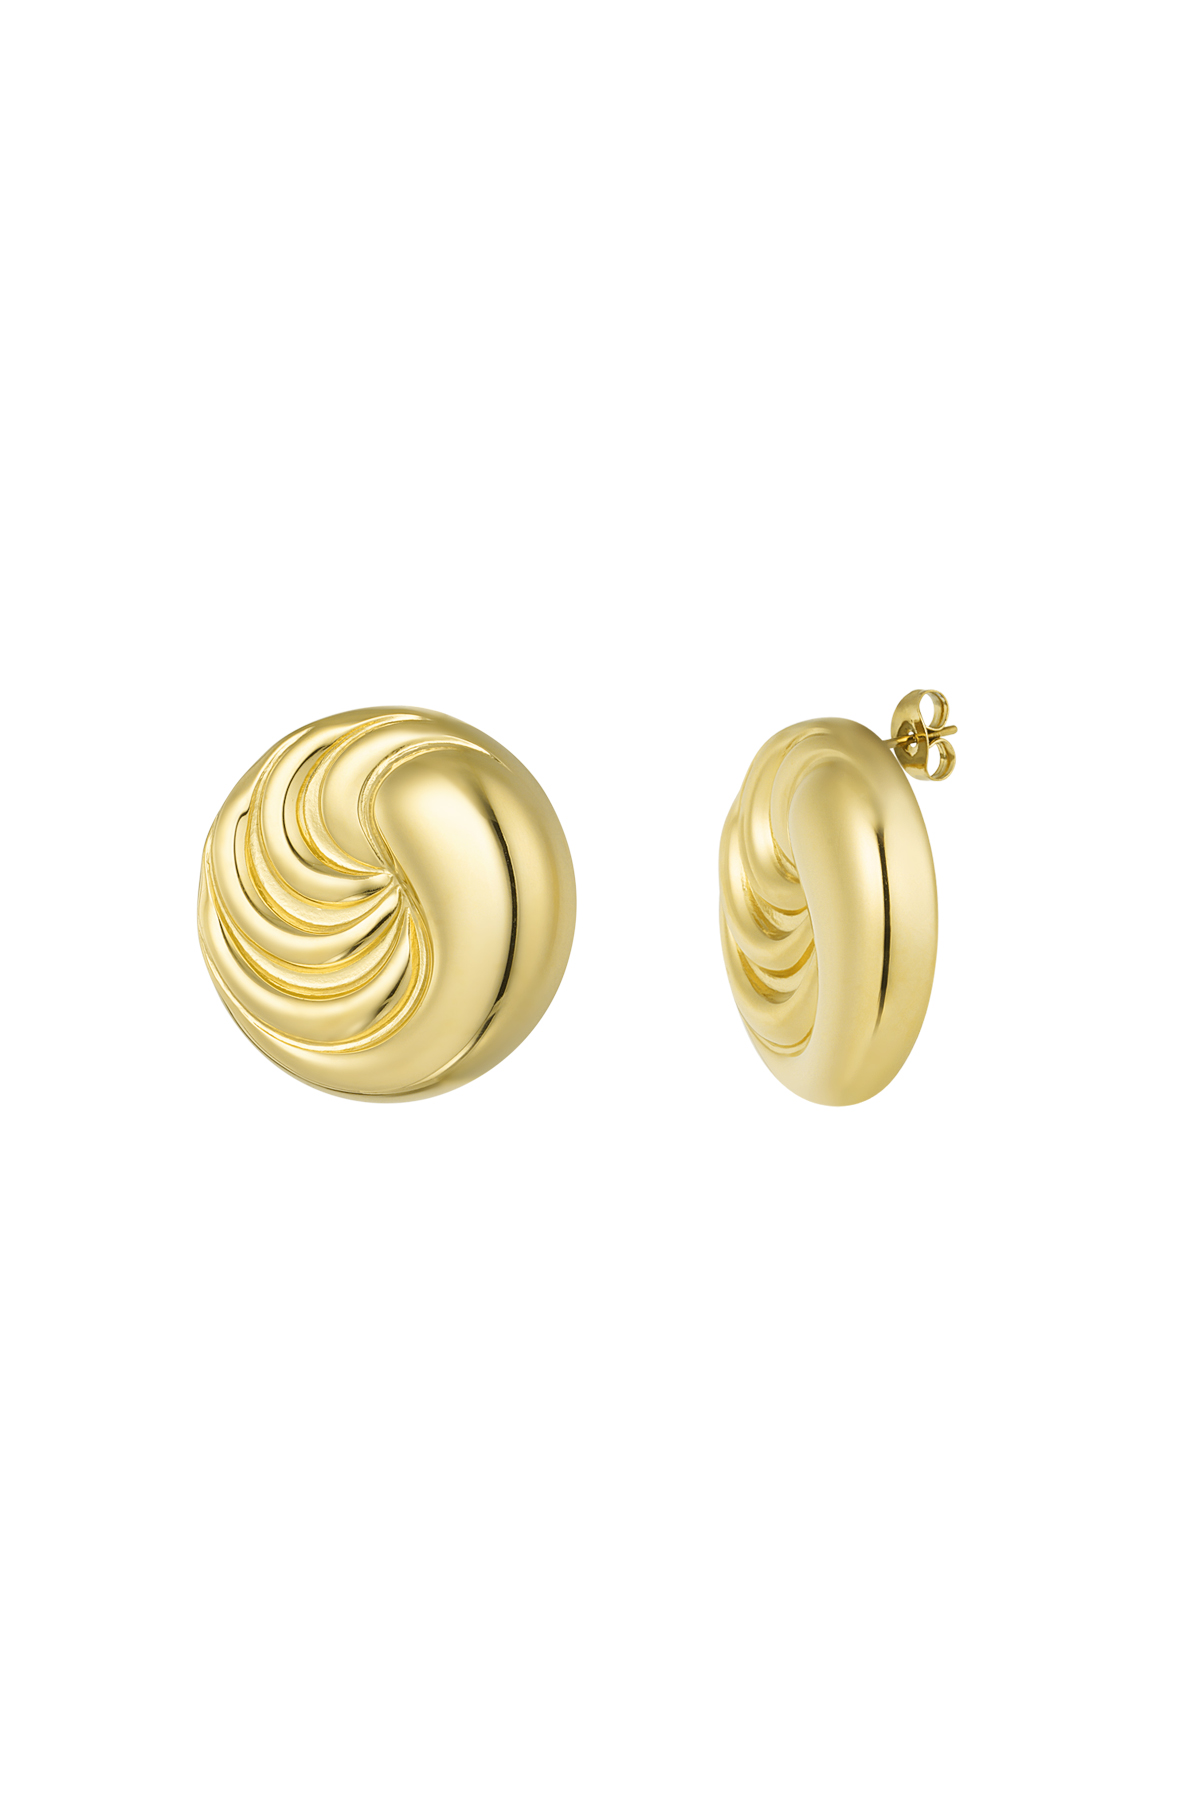 Earrings twizzle wave - gold h5 